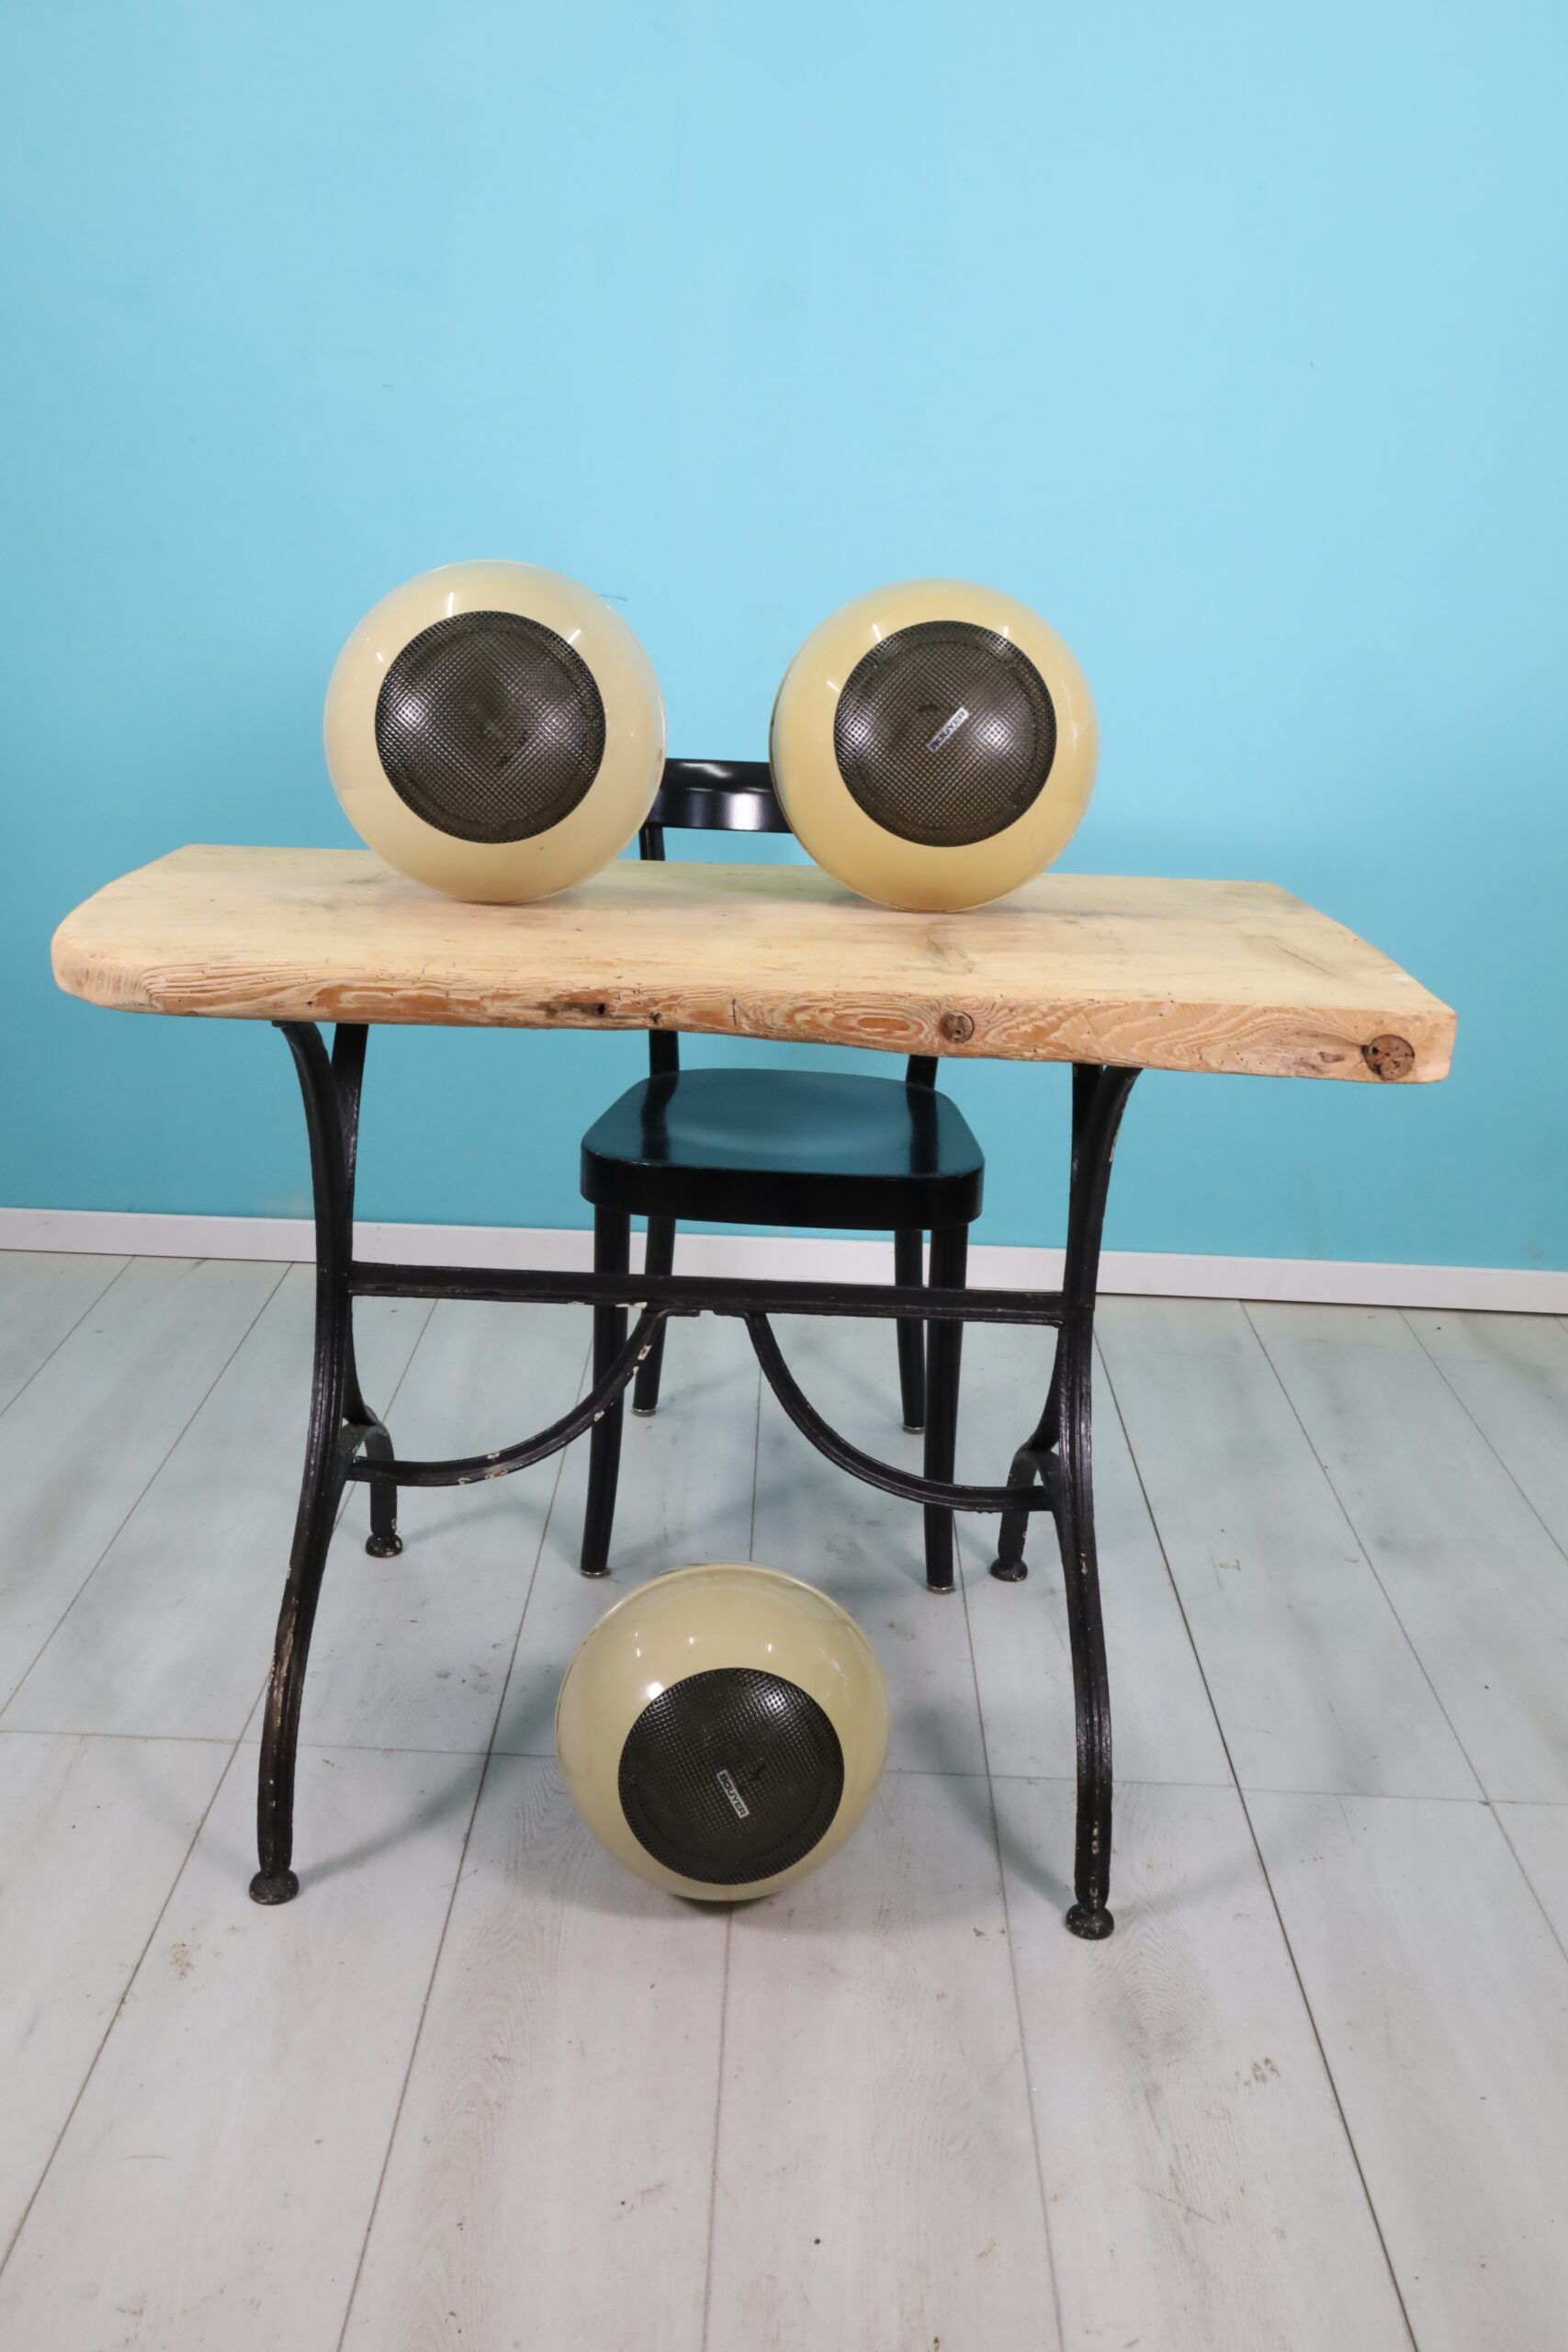 Vintage speakers - Image 1 | bevintage.ch